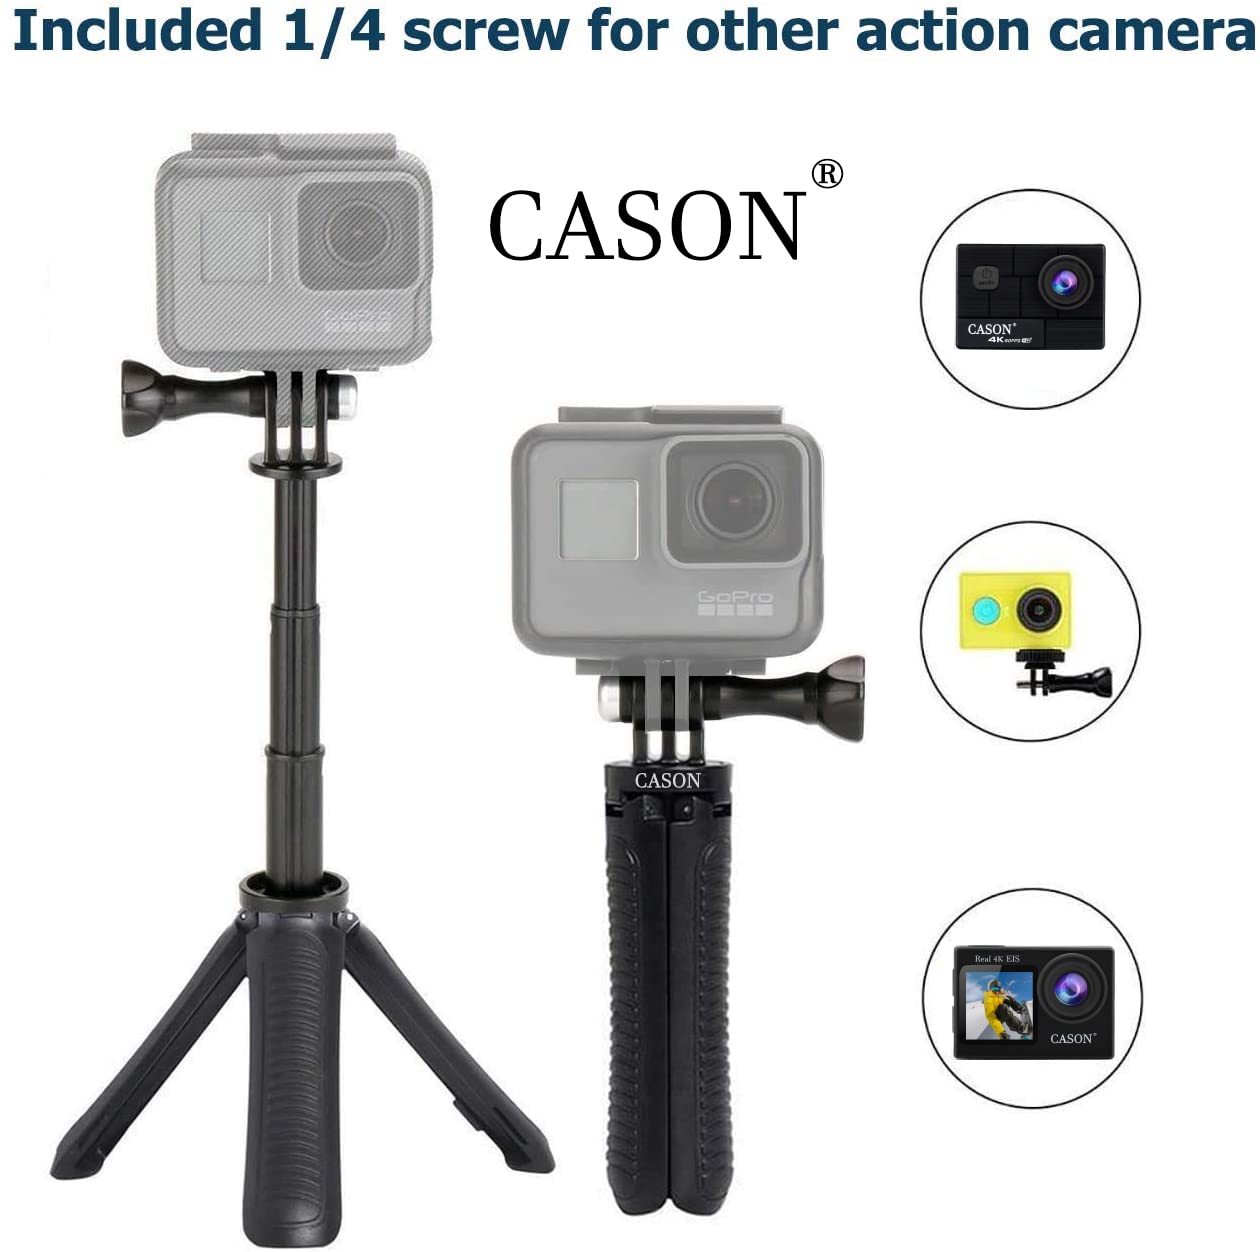 Cason Action Cameras –